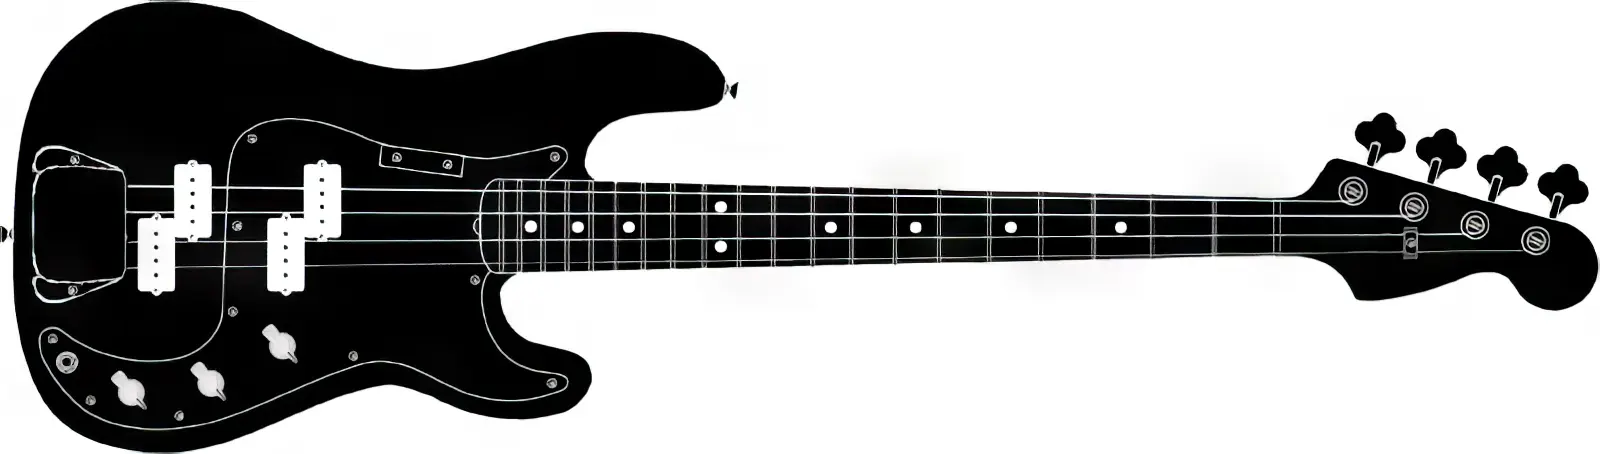 Projekt Zakończonej Fazy 1 gitara immo custom shop